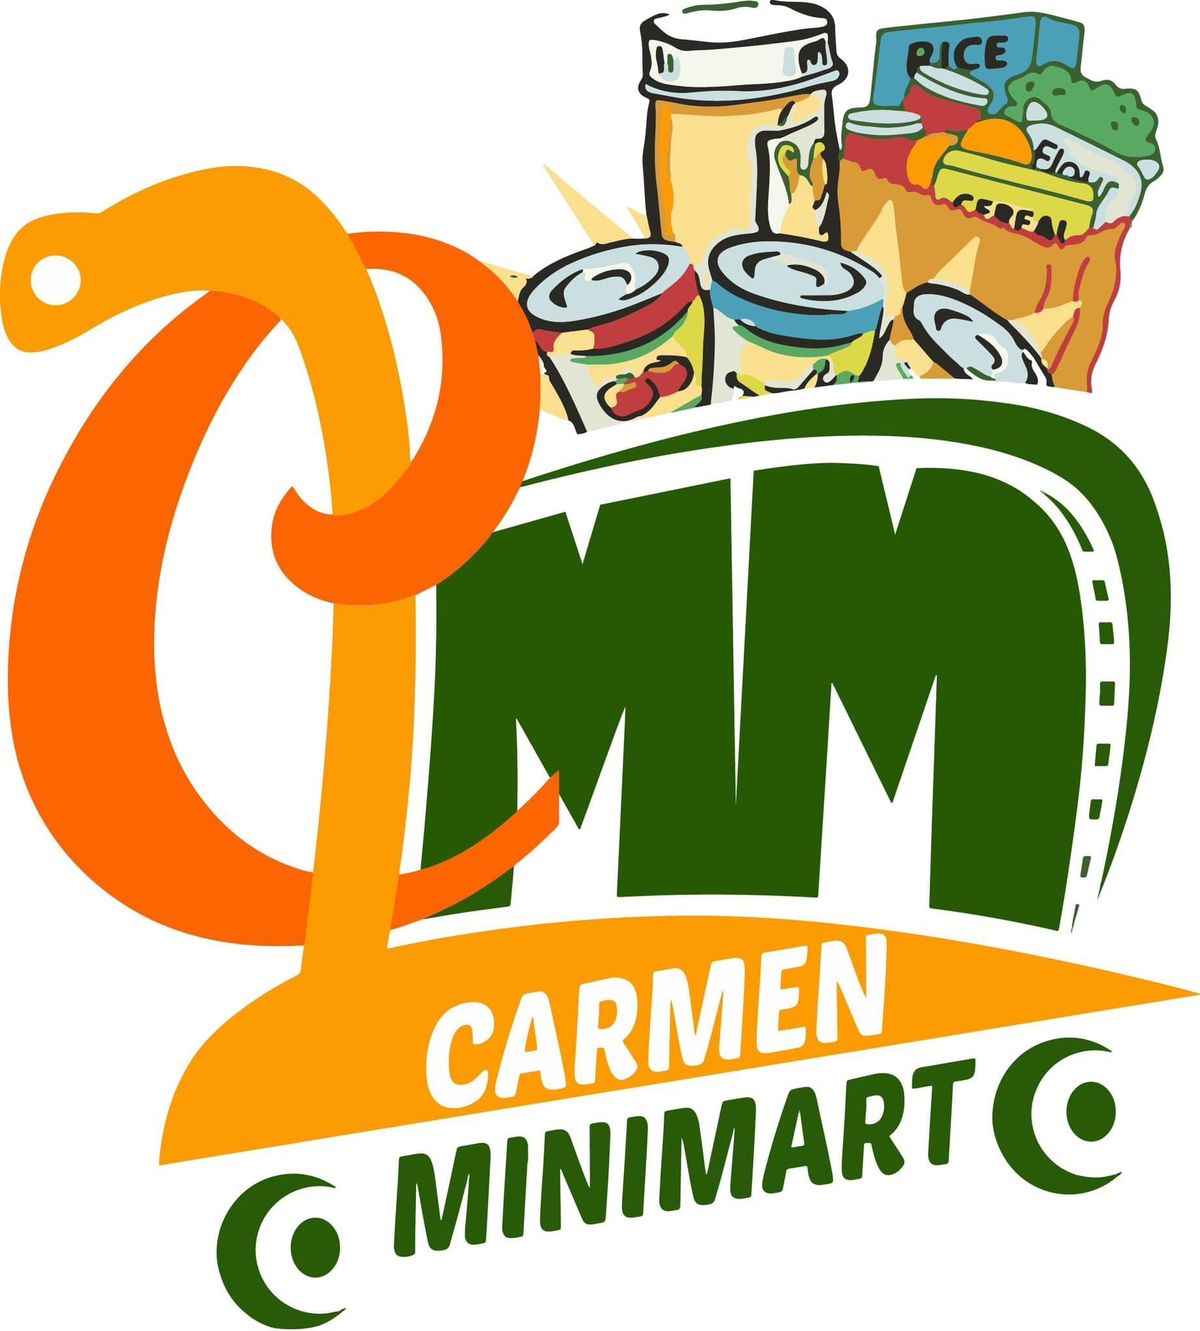 Carmen Minimart's 1st Year Anniversary